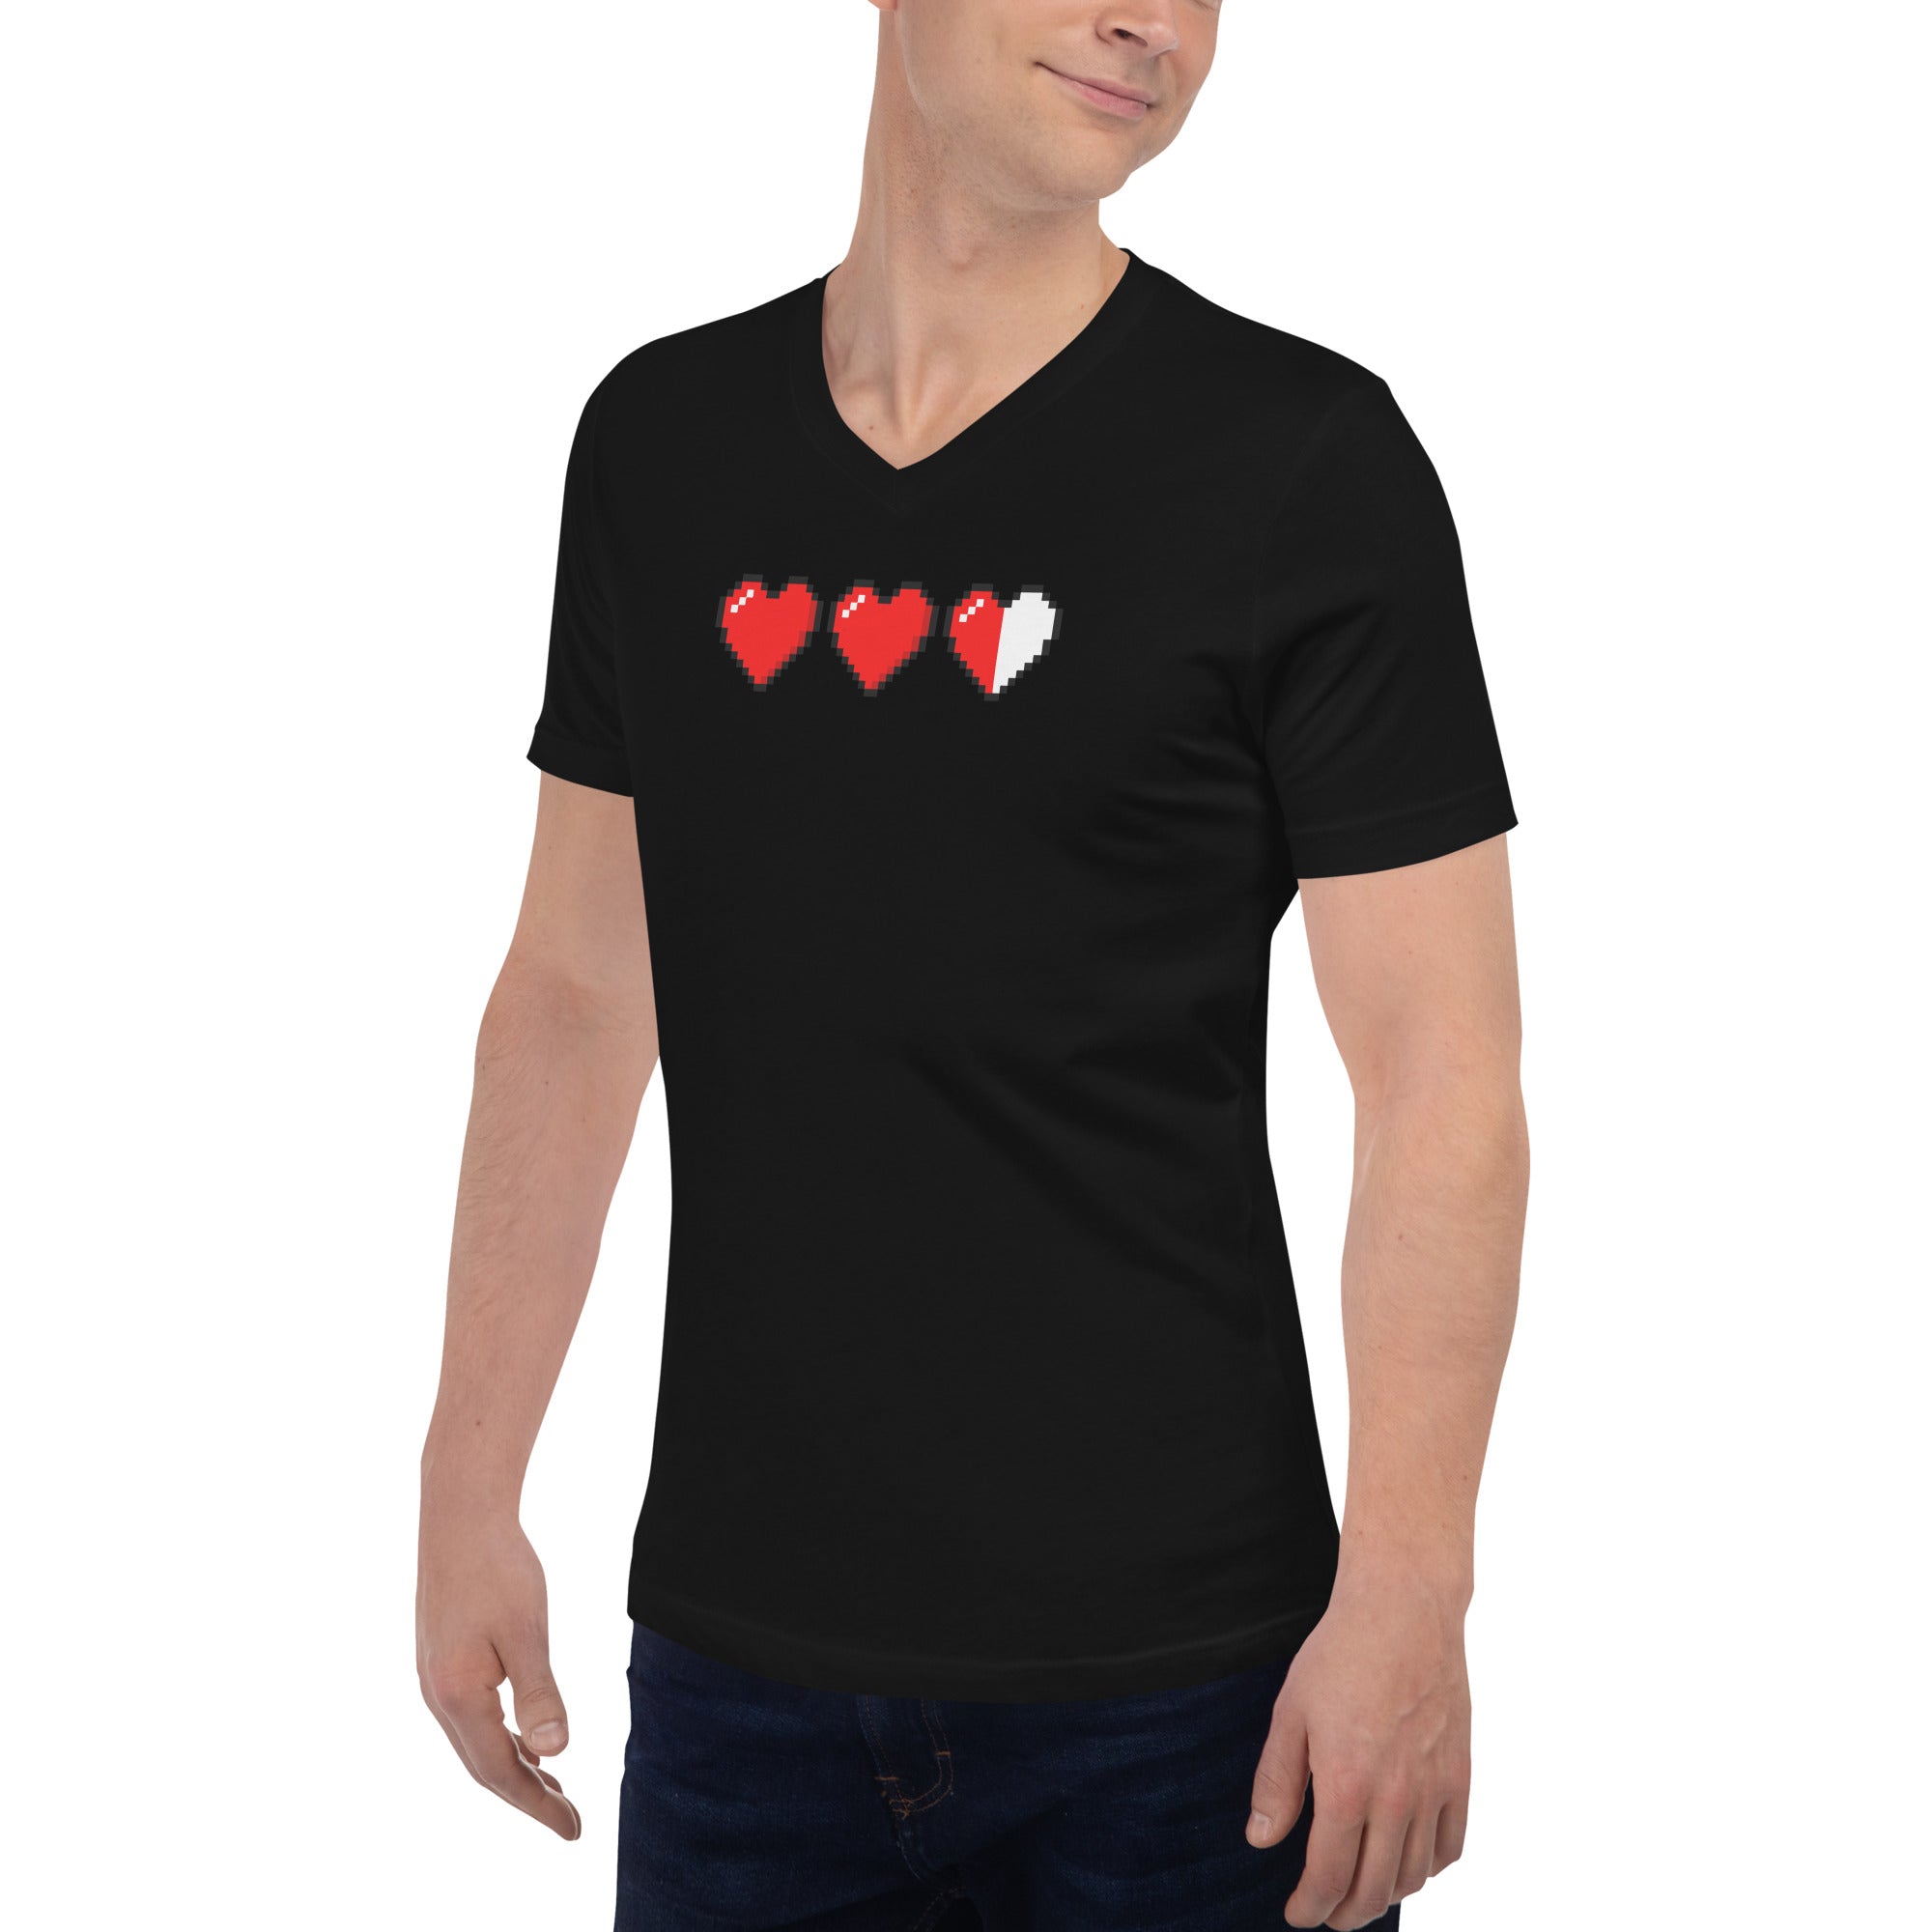 3 Heart Meter Retro 8 Bit Video Game Pixelated Short Sleeve V-Neck T-Shirt